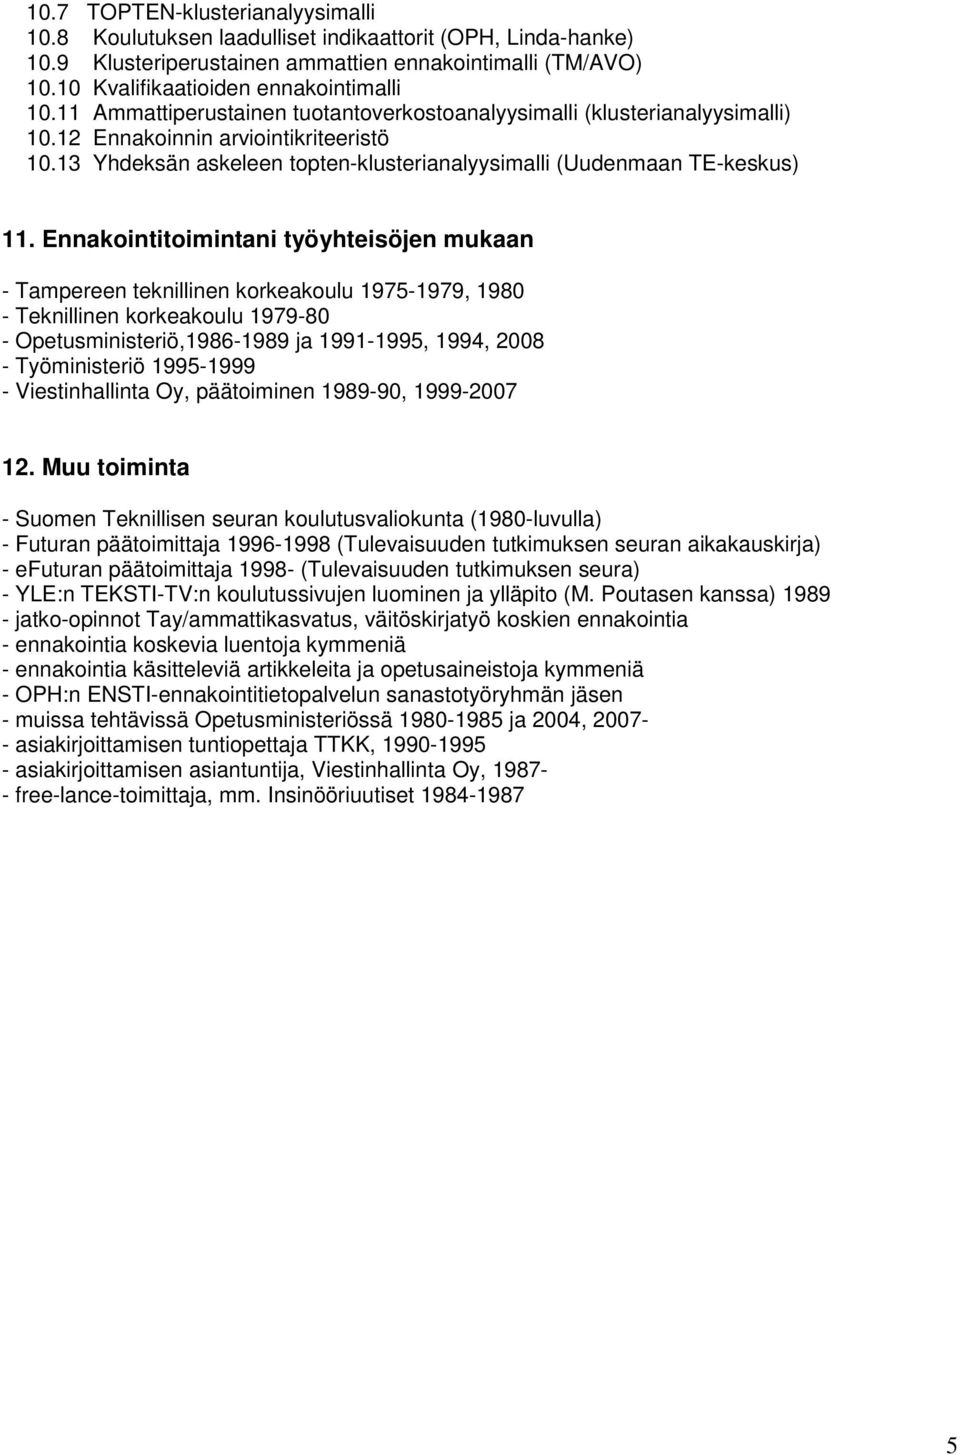 Ennakointitoimintani työyhteisöjen mukaan - Tampereen teknillinen korkeakoulu 1975-1979, 1980 - Teknillinen korkeakoulu 1979-80 - Opetusministeriö,1986-1989 ja 1991-1995, 1994, 2008 - Työministeriö